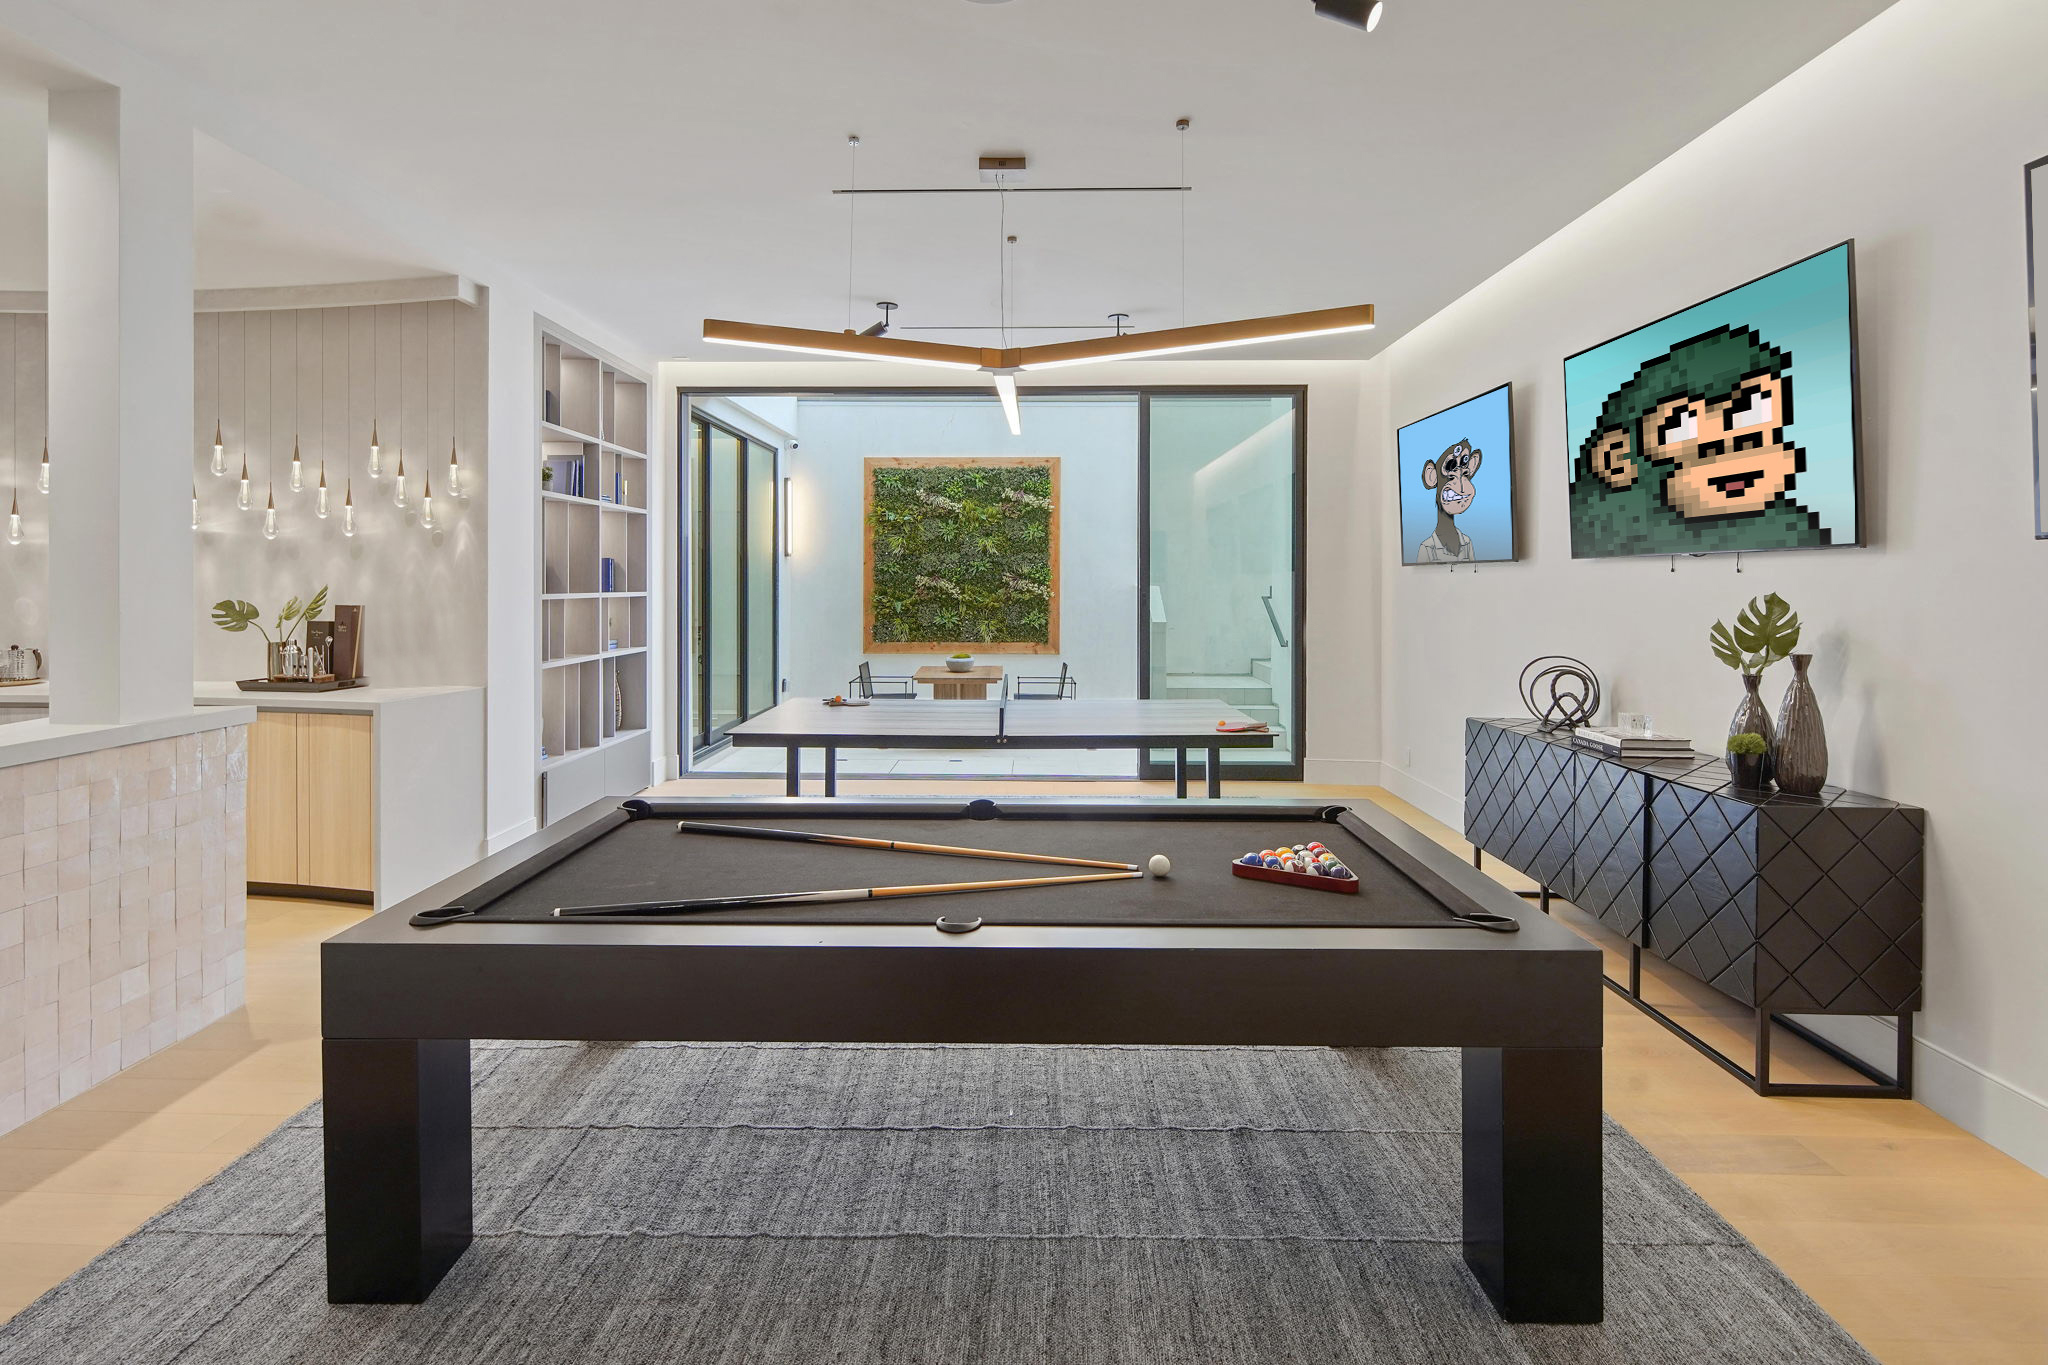 Game Room Luxury Interior Design